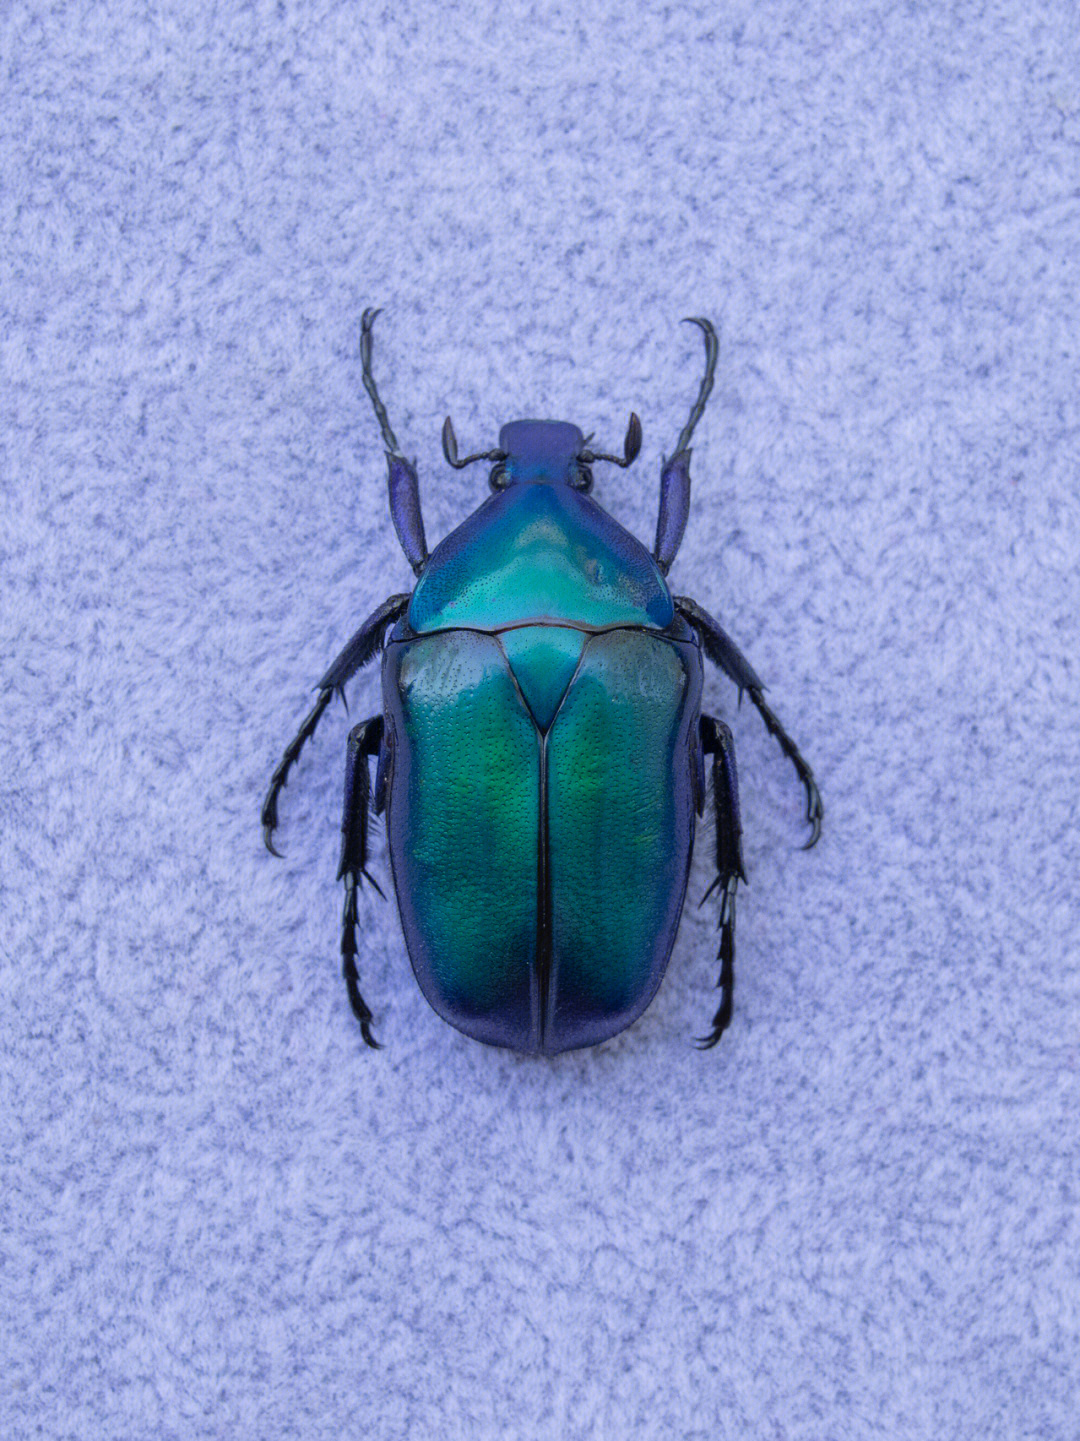 蓝色甲虫图片大全图片